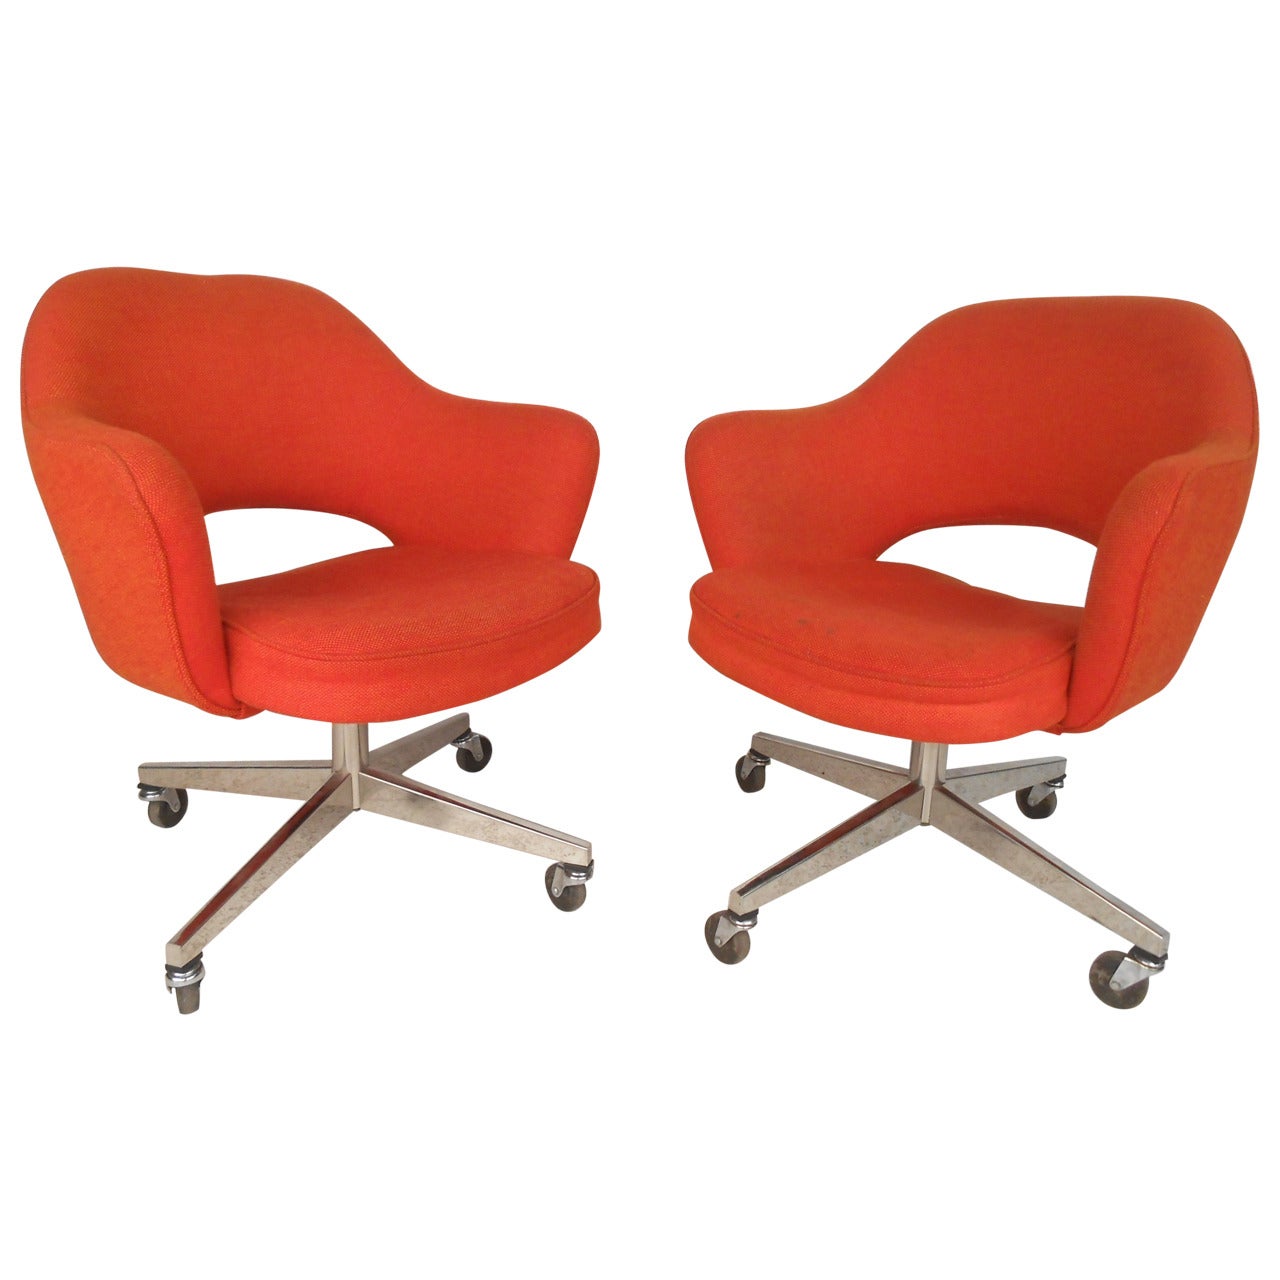 Eero Saarinen Designed Rolling Chairs for Knoll